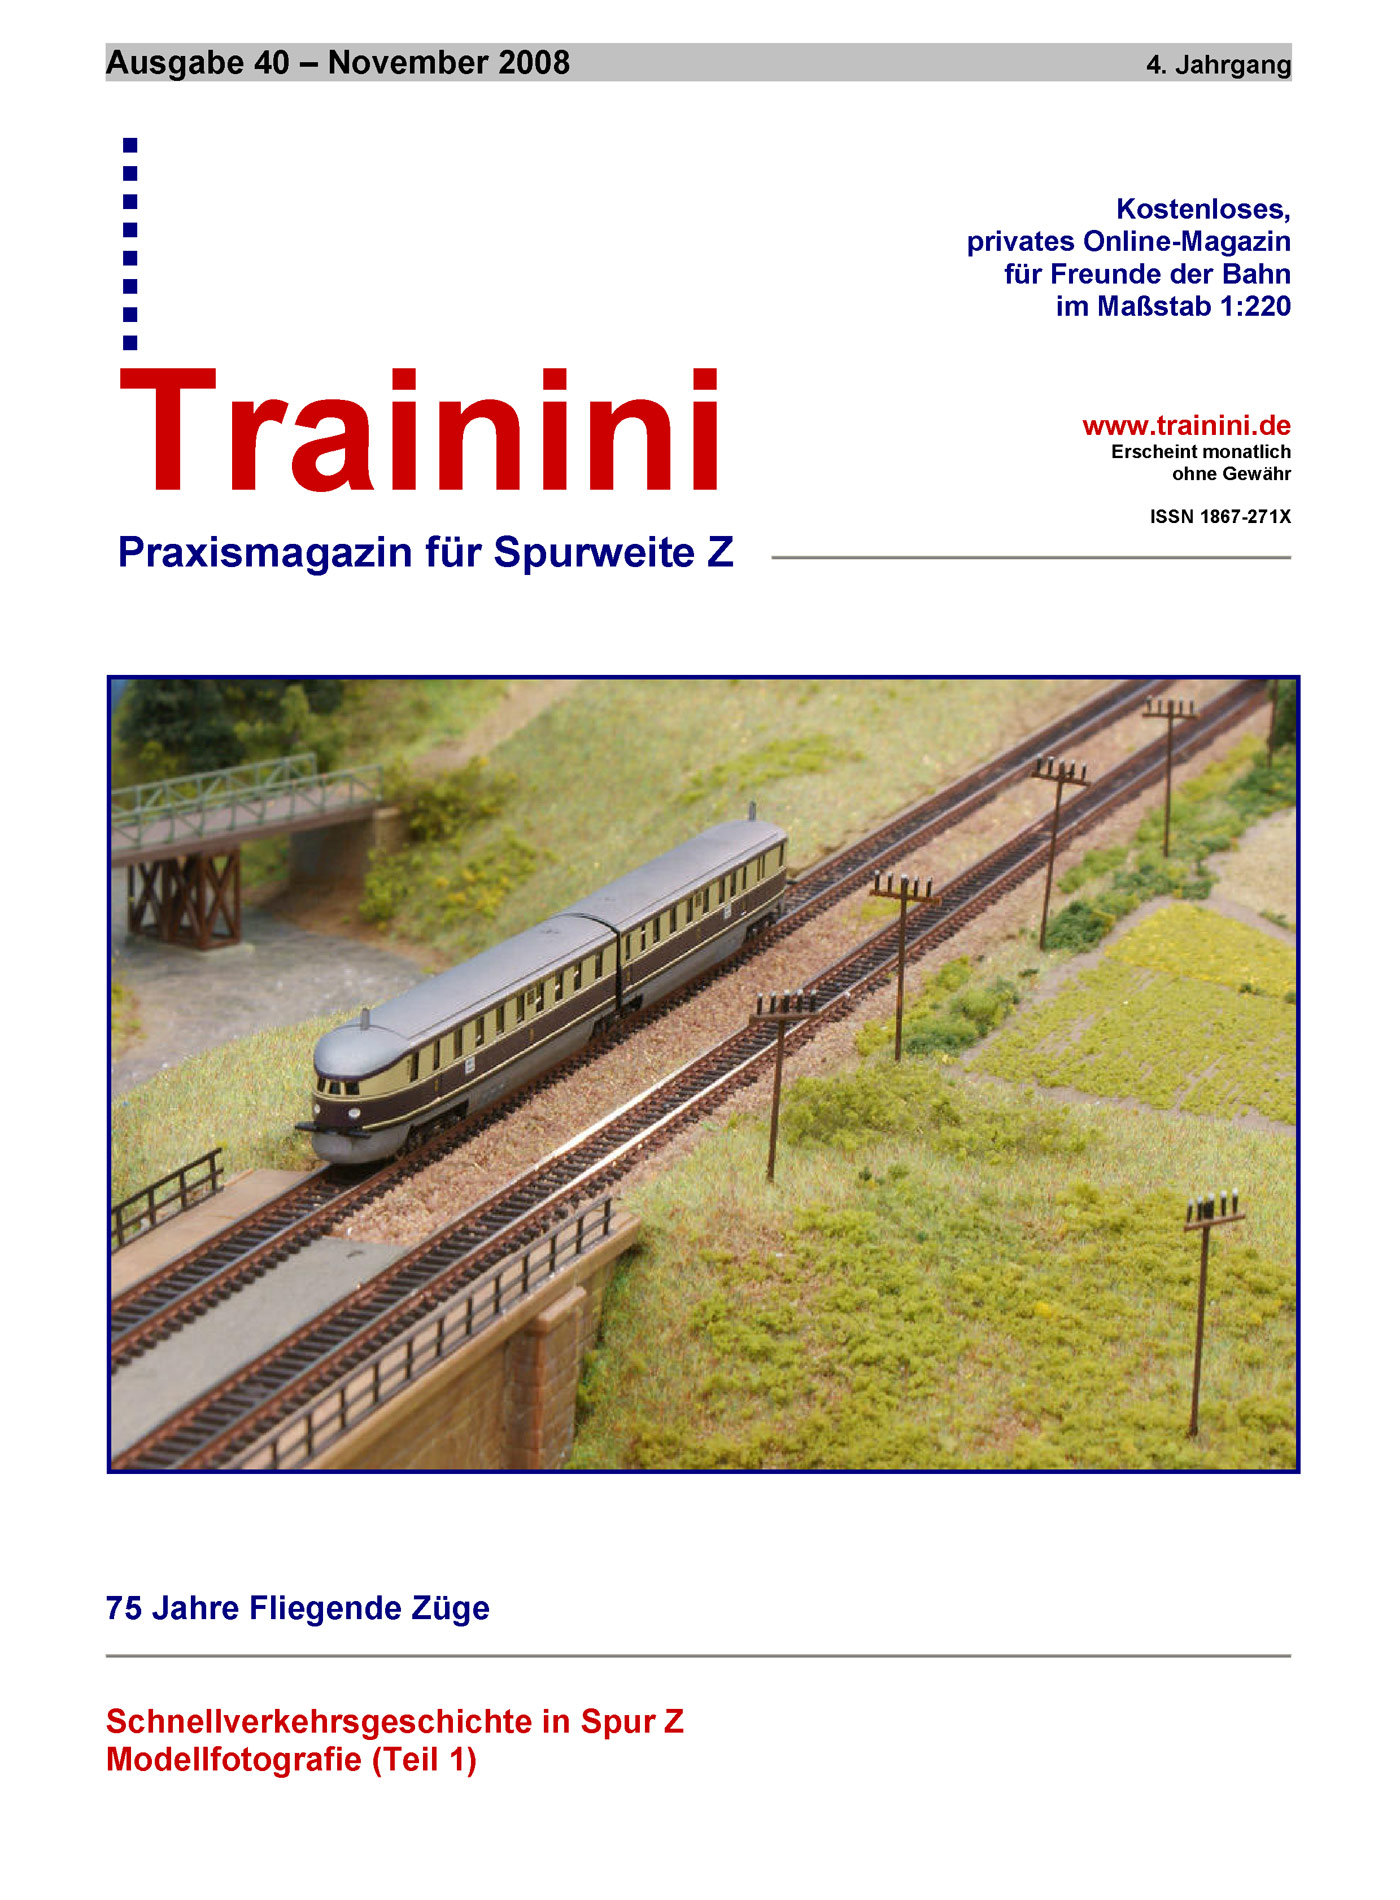 Trainini Ausgabe November 2008